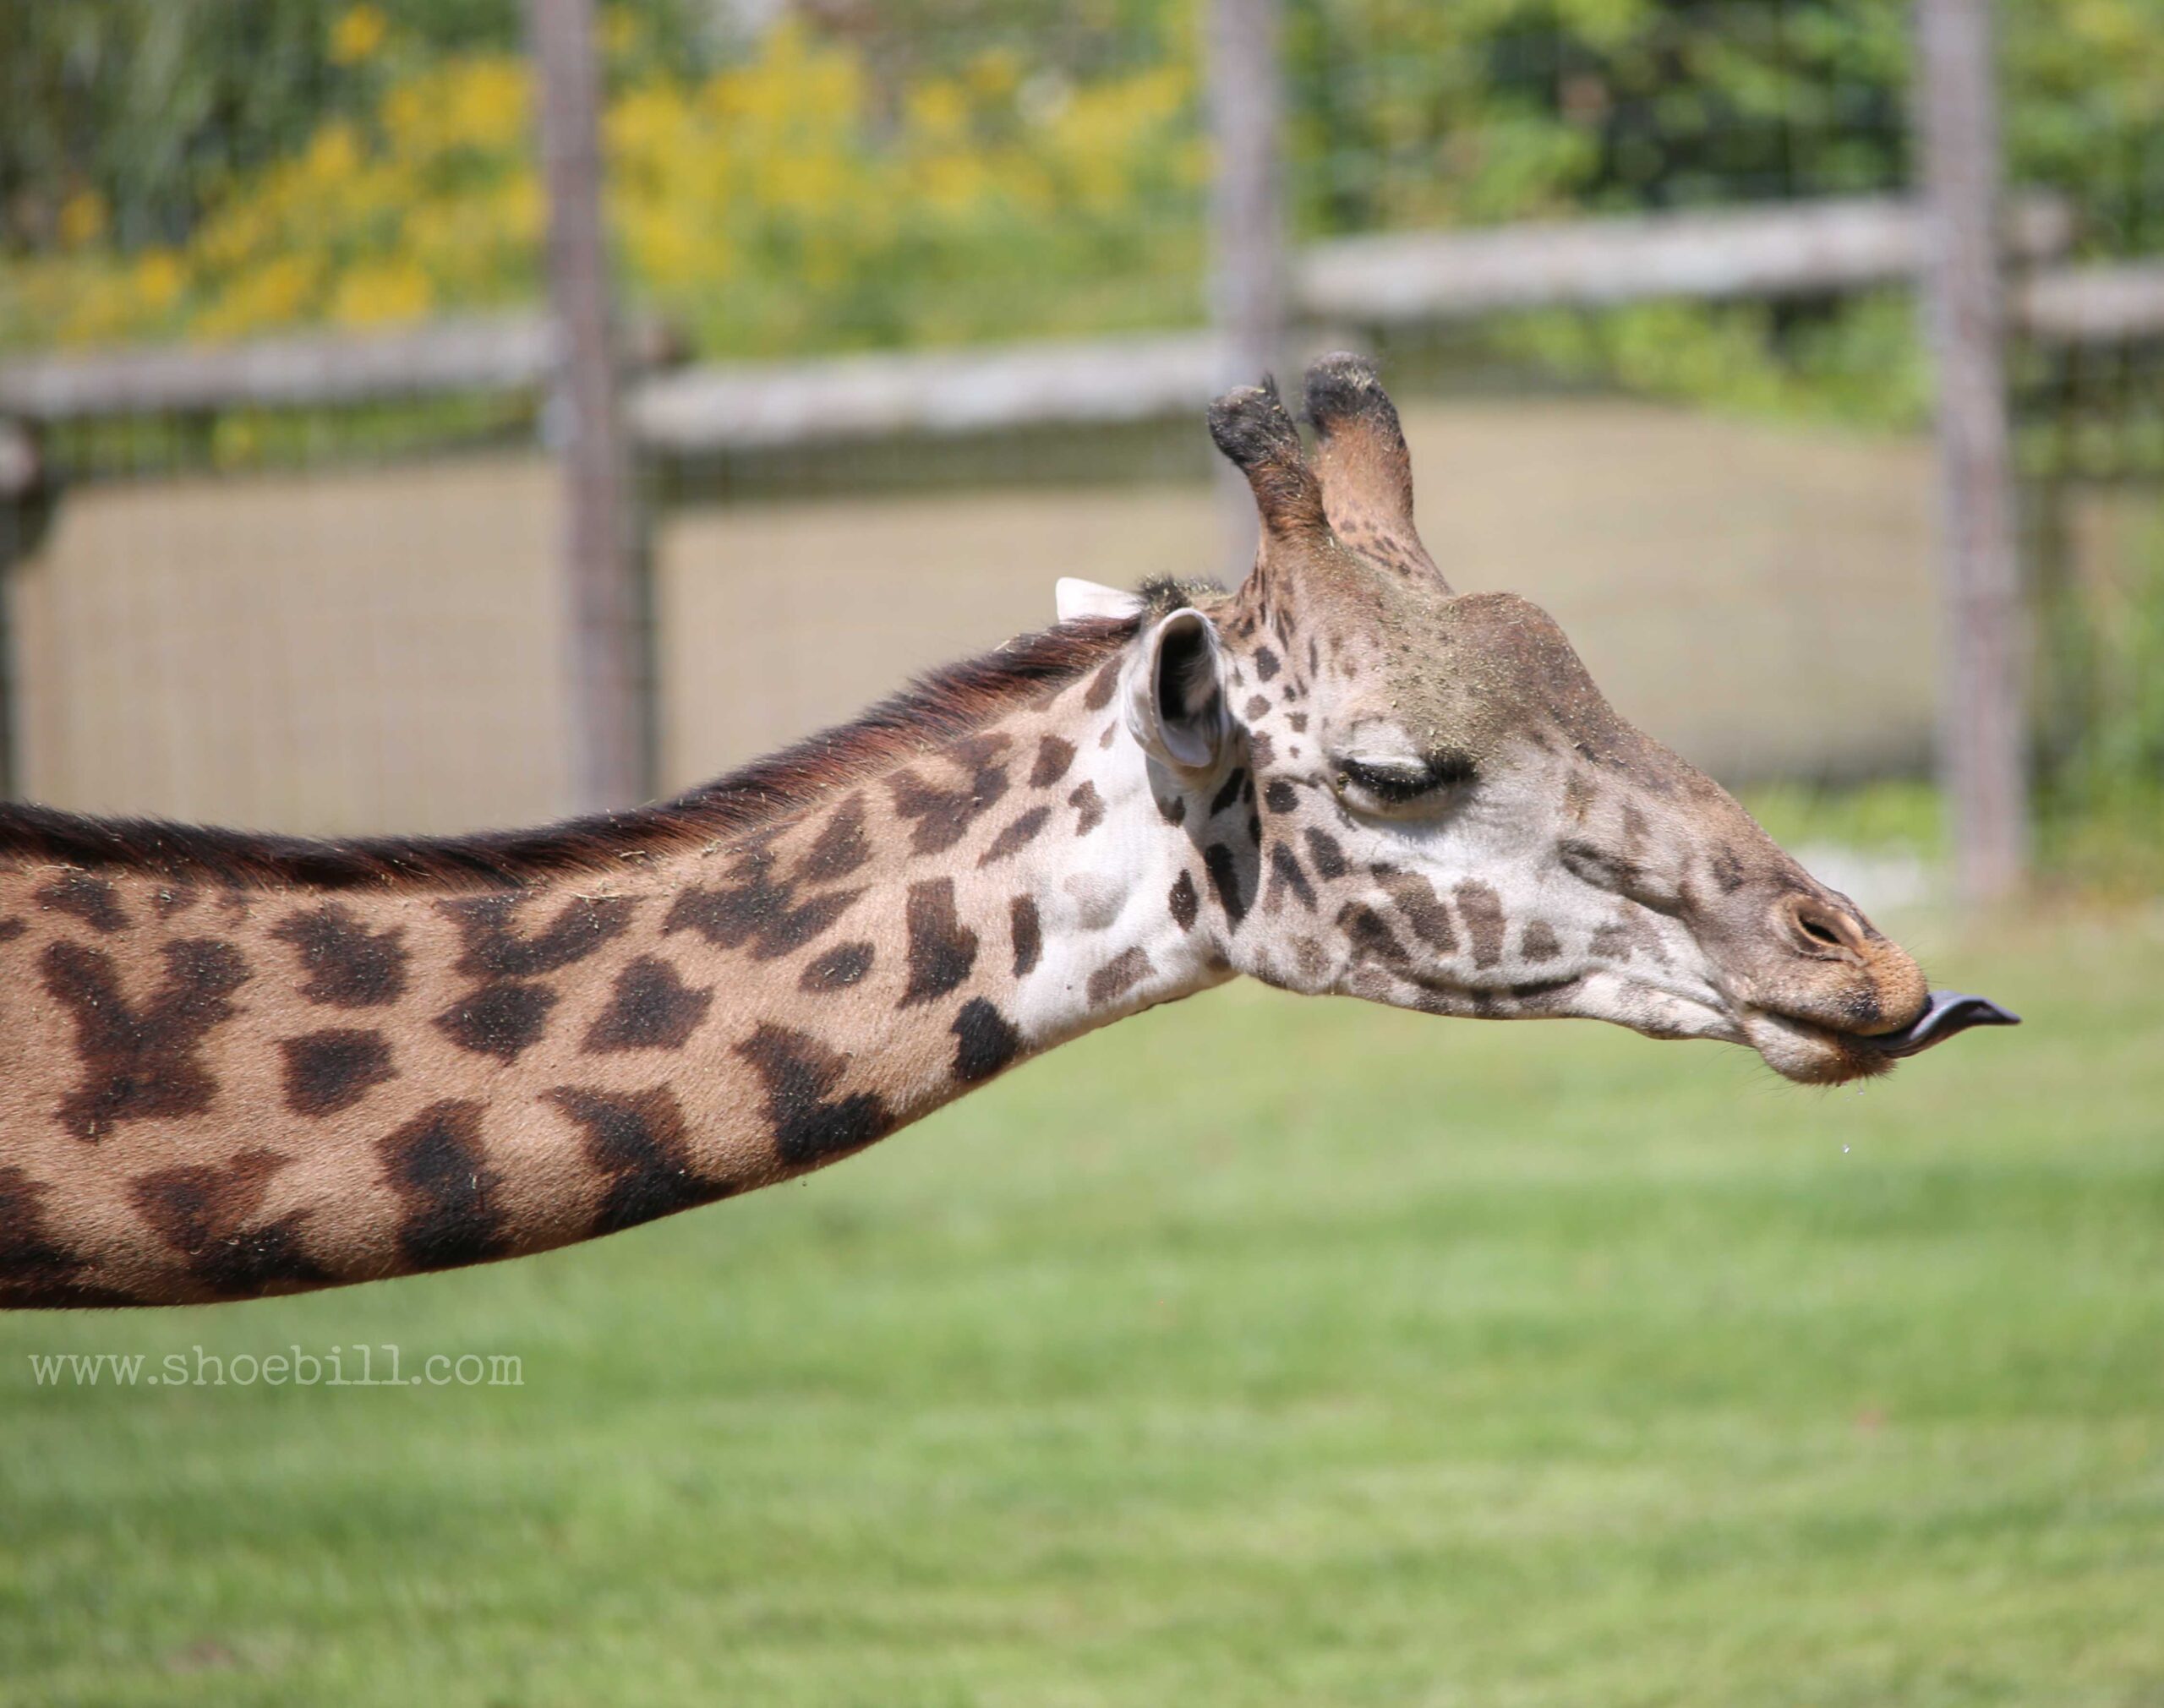 How long is a giraffe’s neck?